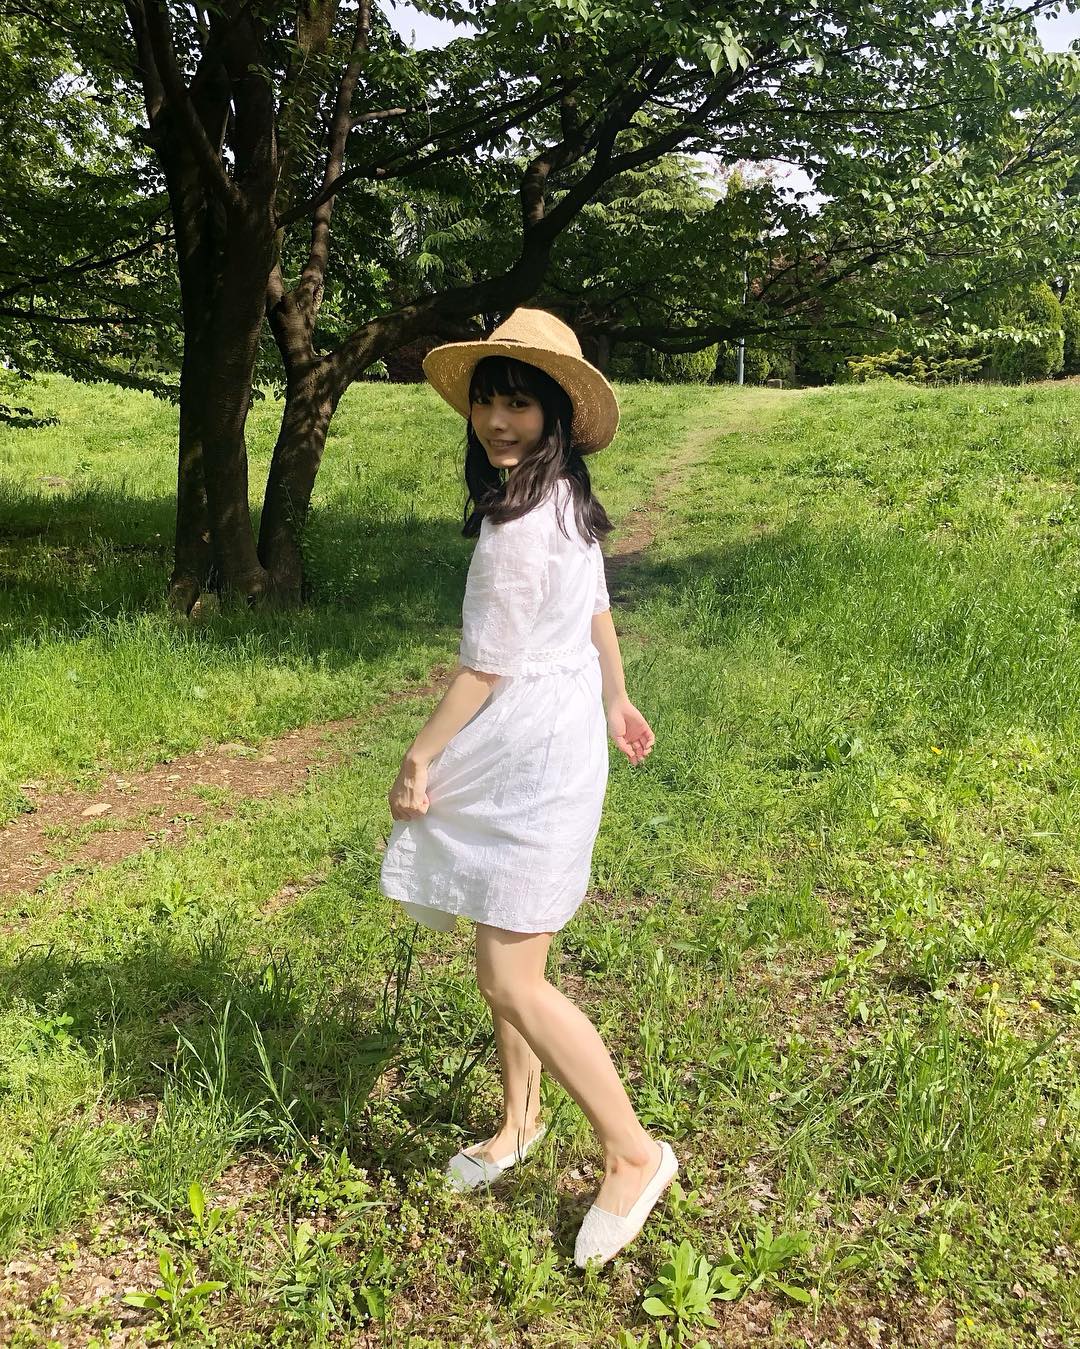 Mio Mio Yae Abp 今日一日撮影でした 白いワンピースに麦わら帽子 こういう服装大好きなのだけど どうかな Wacoca Japan People Life Style